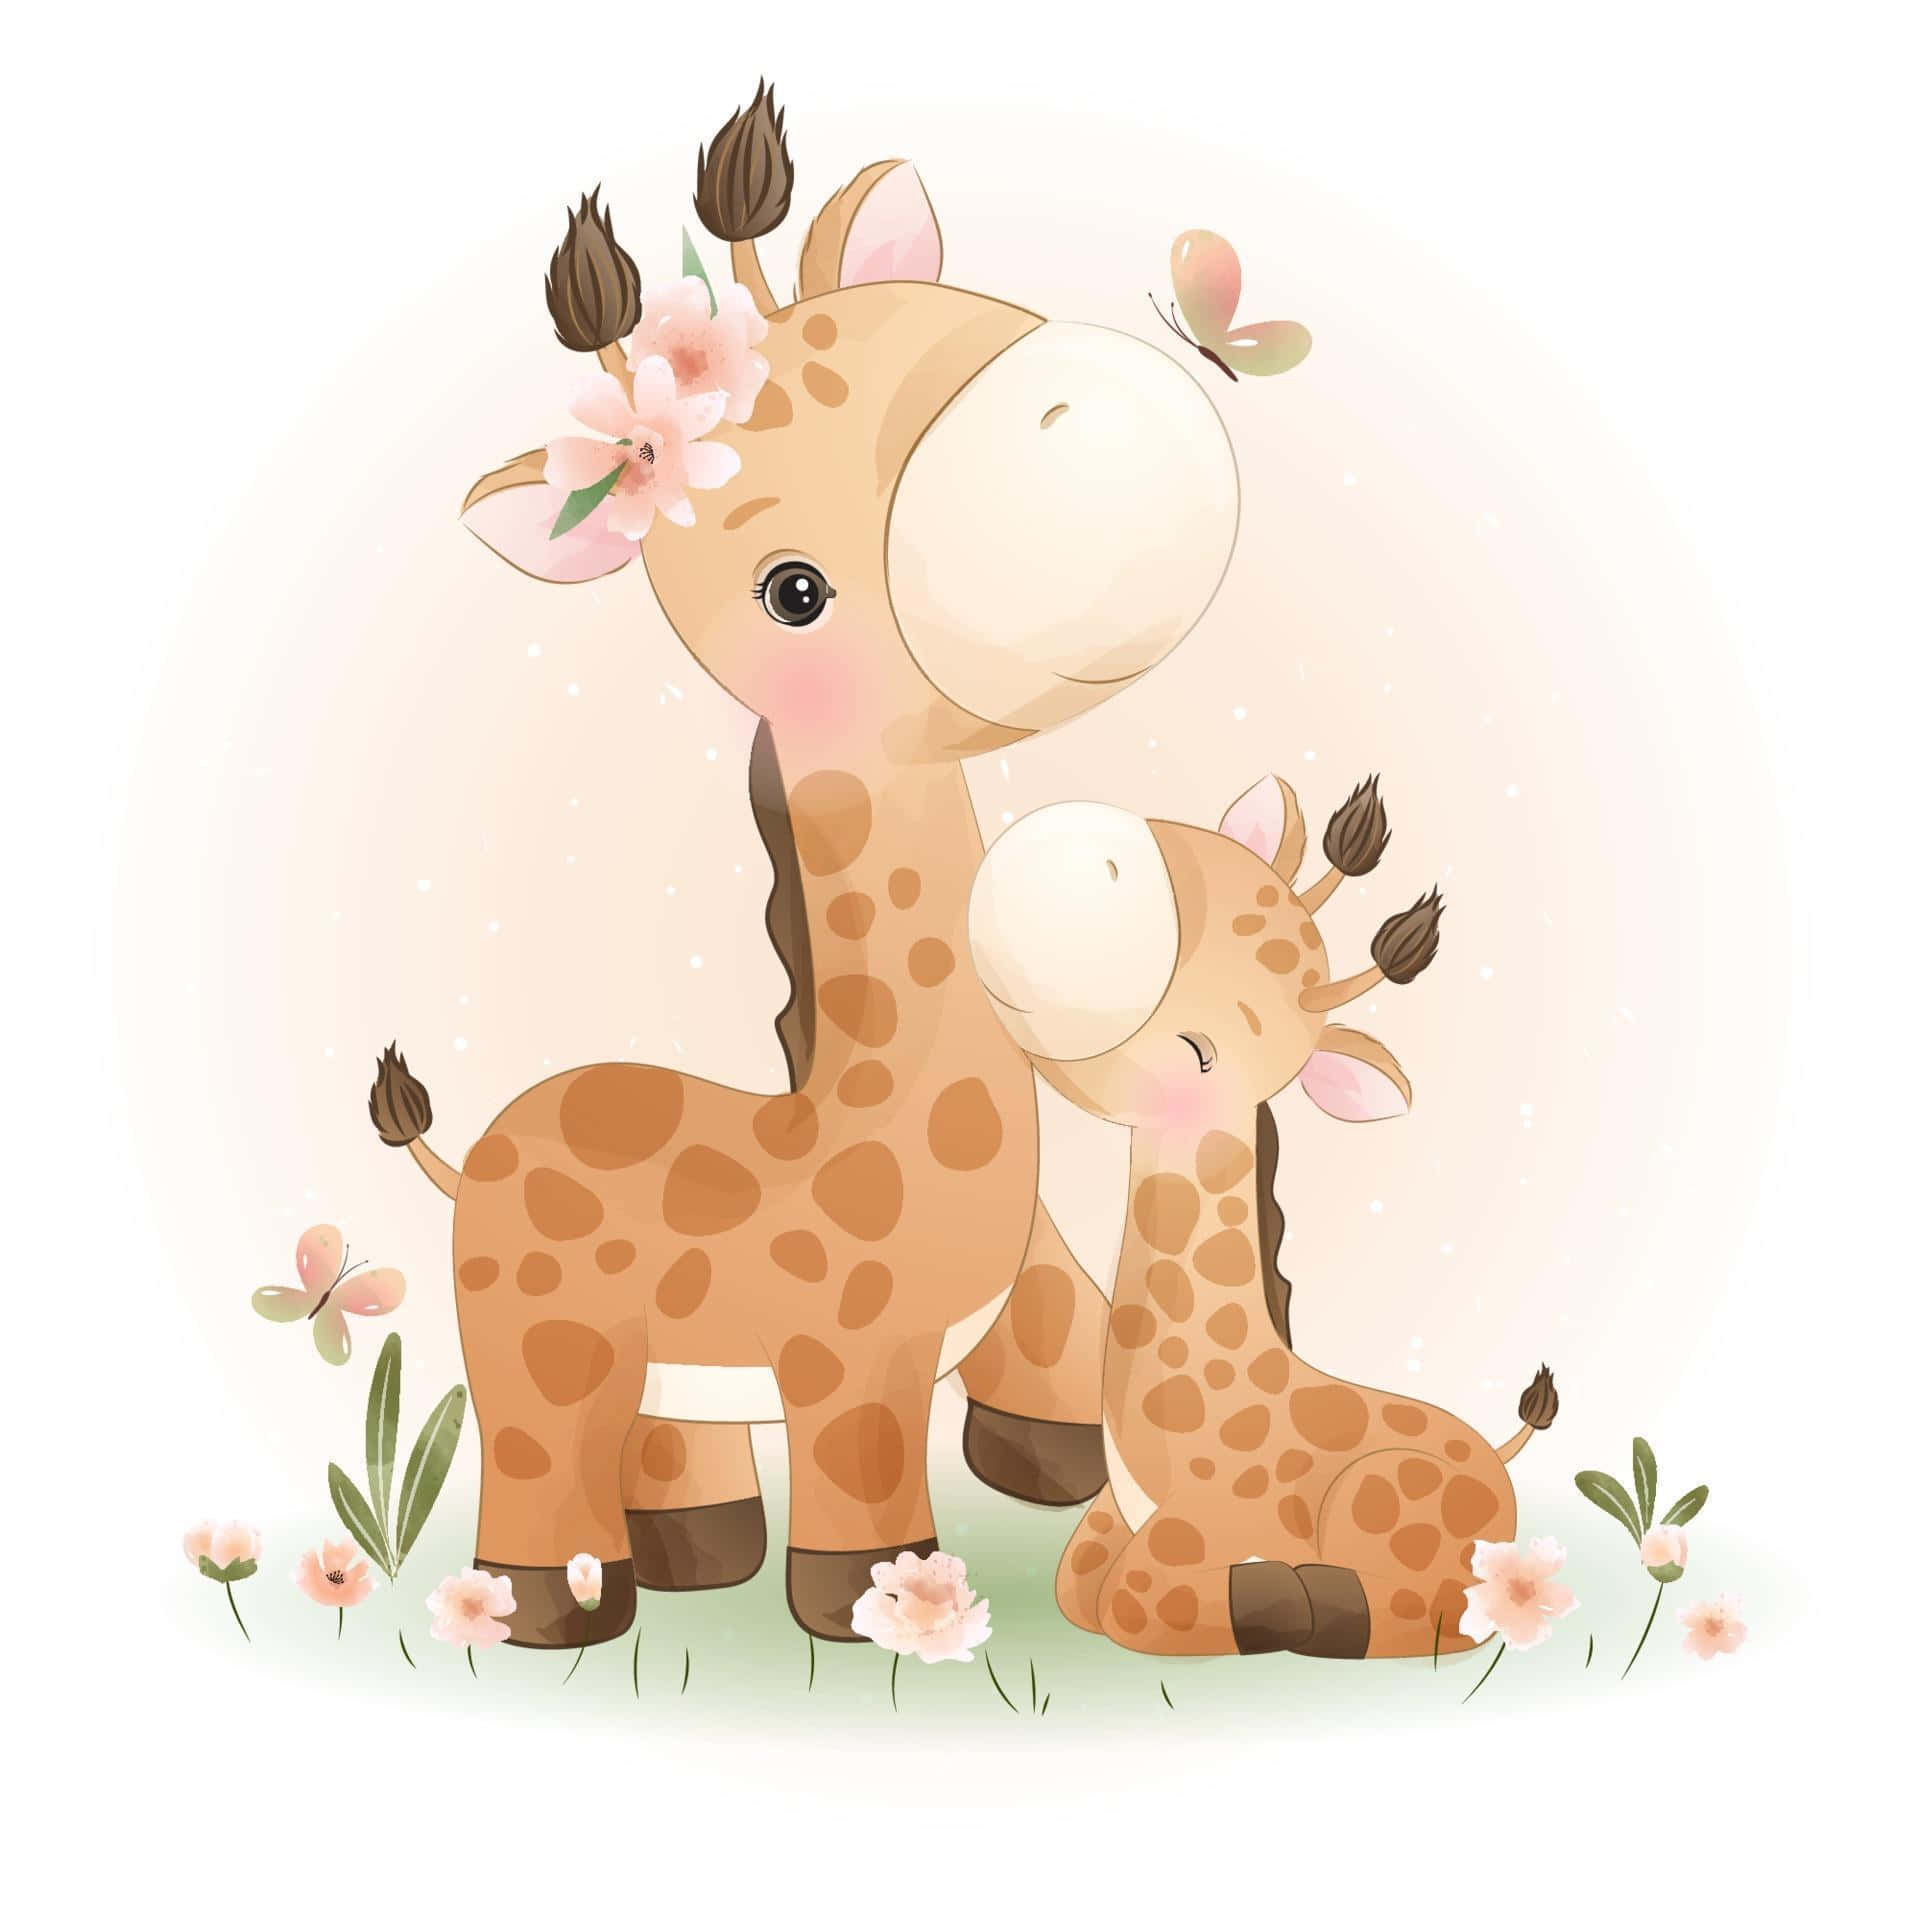 Adorable Kawaii Giraffe with a Cute Smile Wallpaper